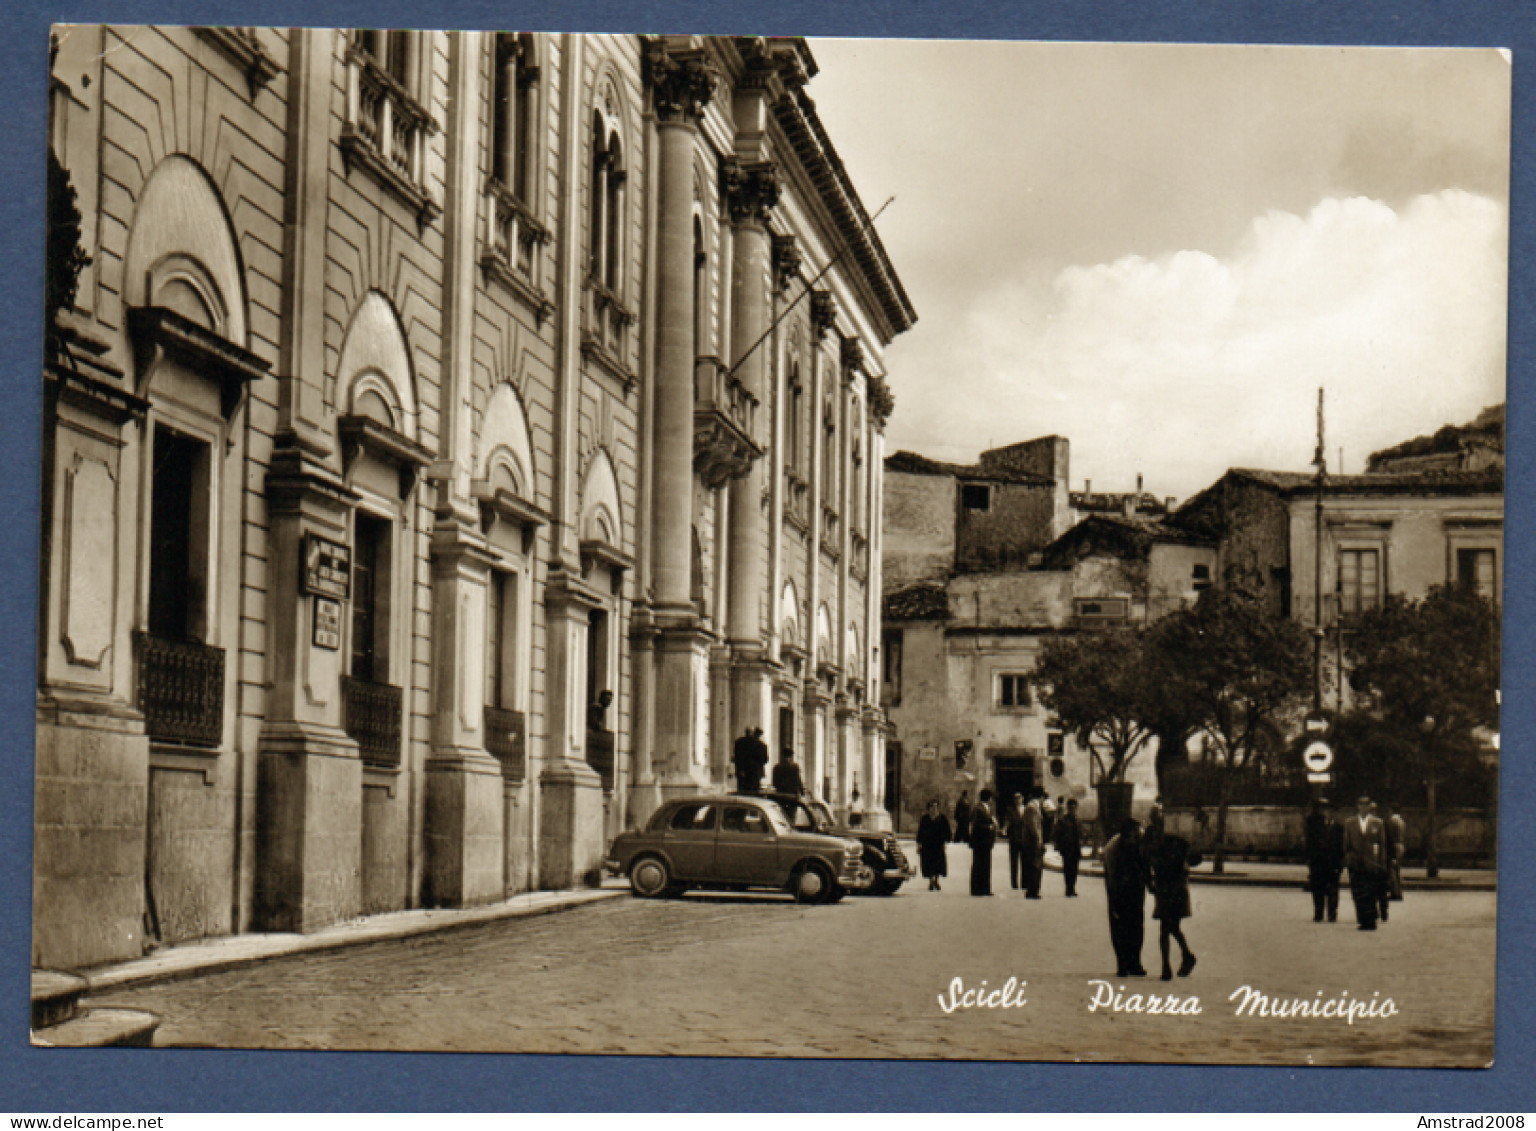 1956 - SCICLI - PIAZZA MUNICIPIO  - ITALIE - Ragusa